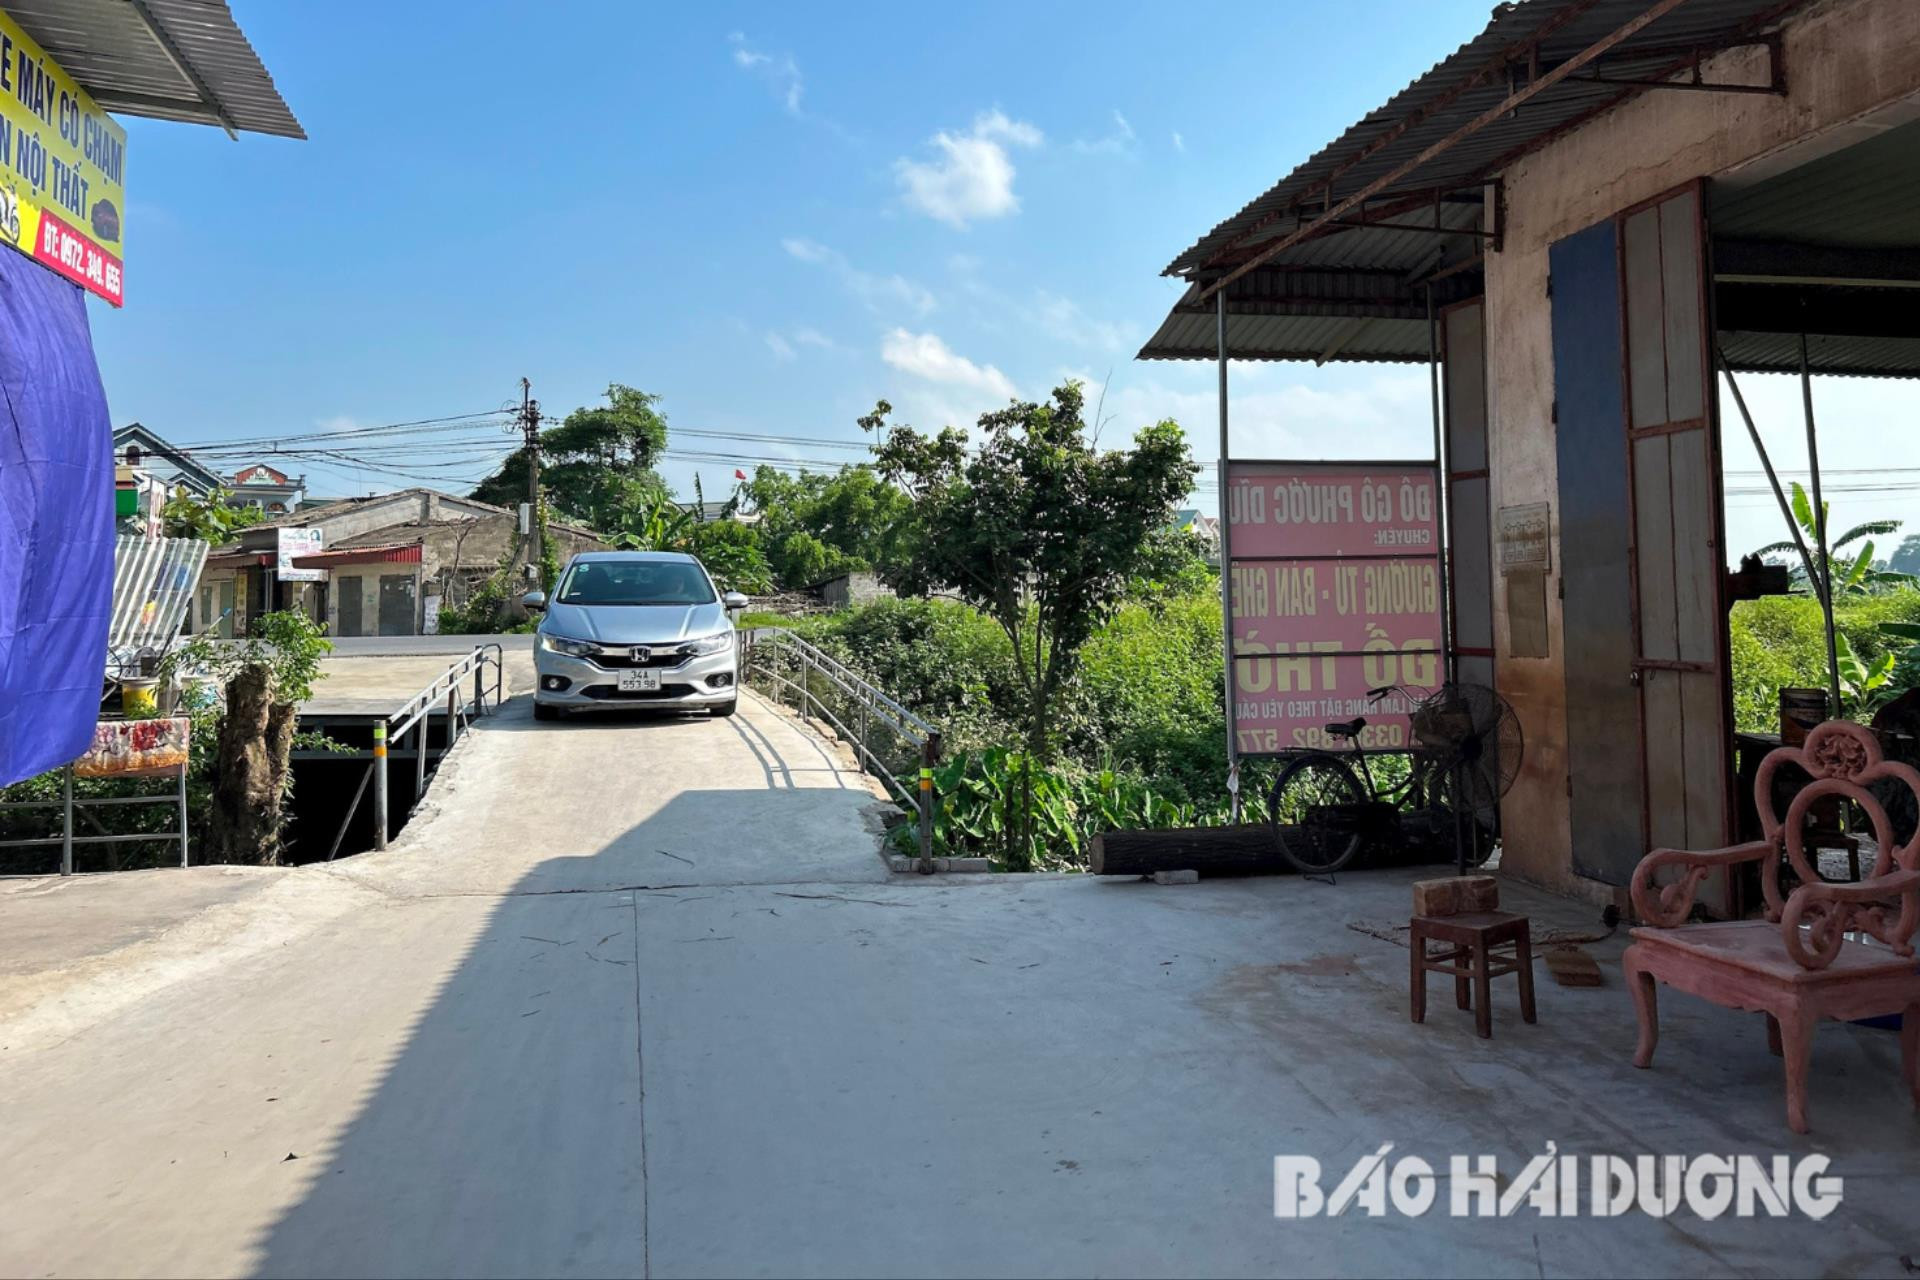 Cầu ở thôn Cúc Bồ, xã Kiến Quốc (Ninh Giang) nhỏ hẹp, xuống cấp, không đáp ứng nhu cầu đi lại cho người dân và các hộ sản xuất, kinh doanh làng nghề mộc